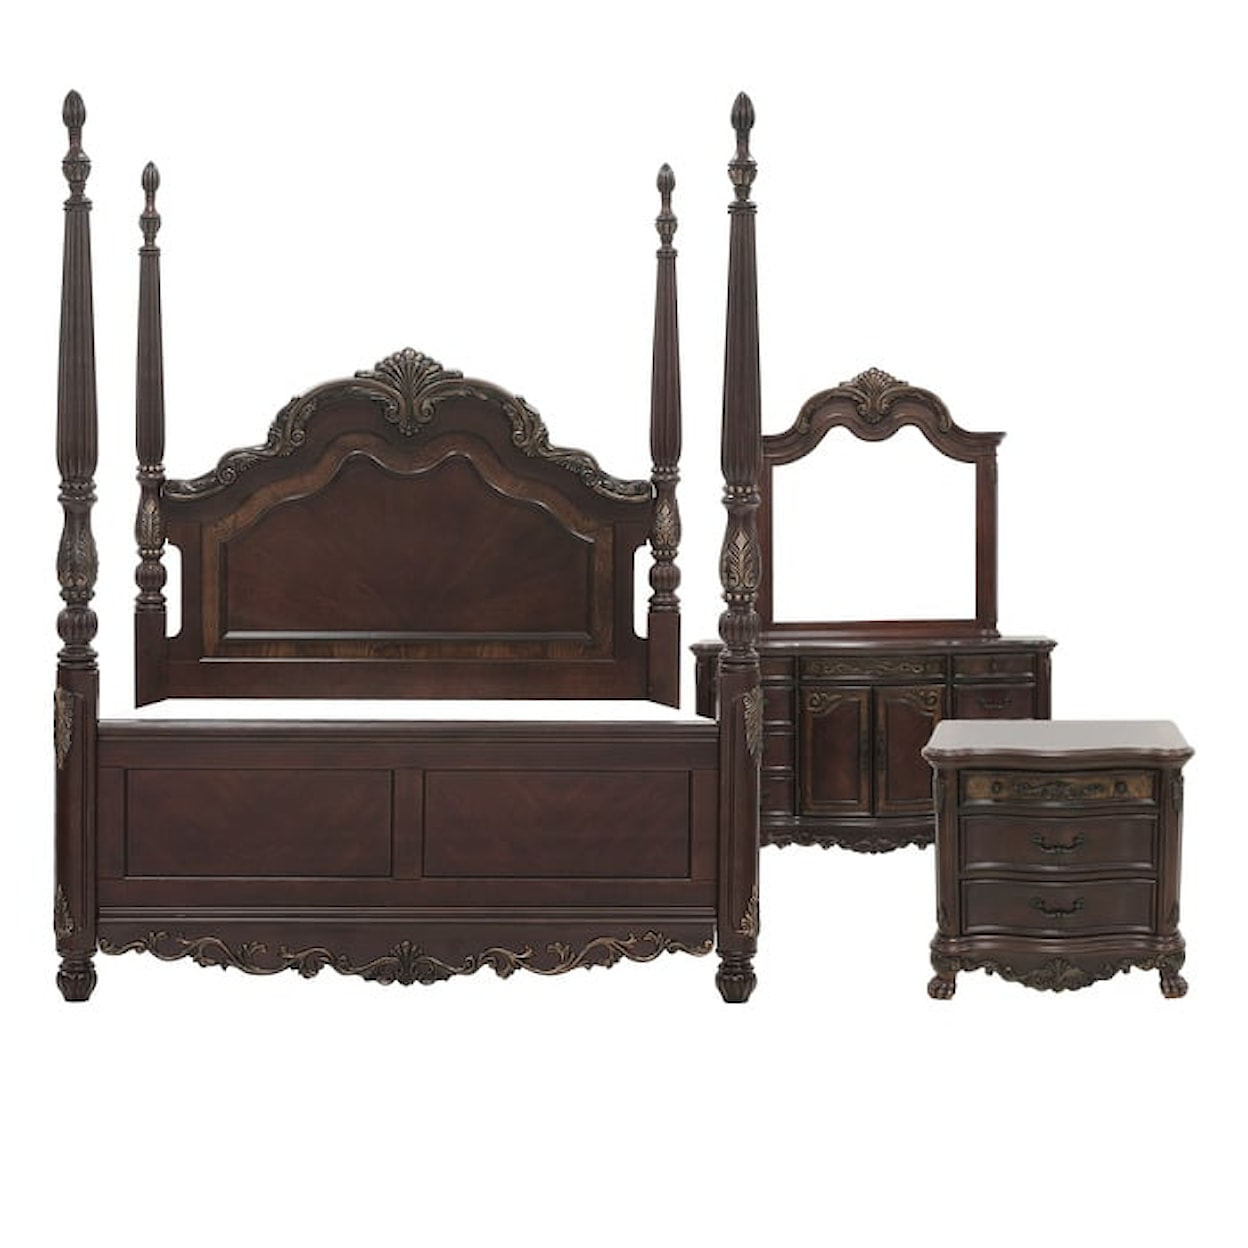 Homelegance Furniture Deryn Park 4-Piece Queen Bedroom Set